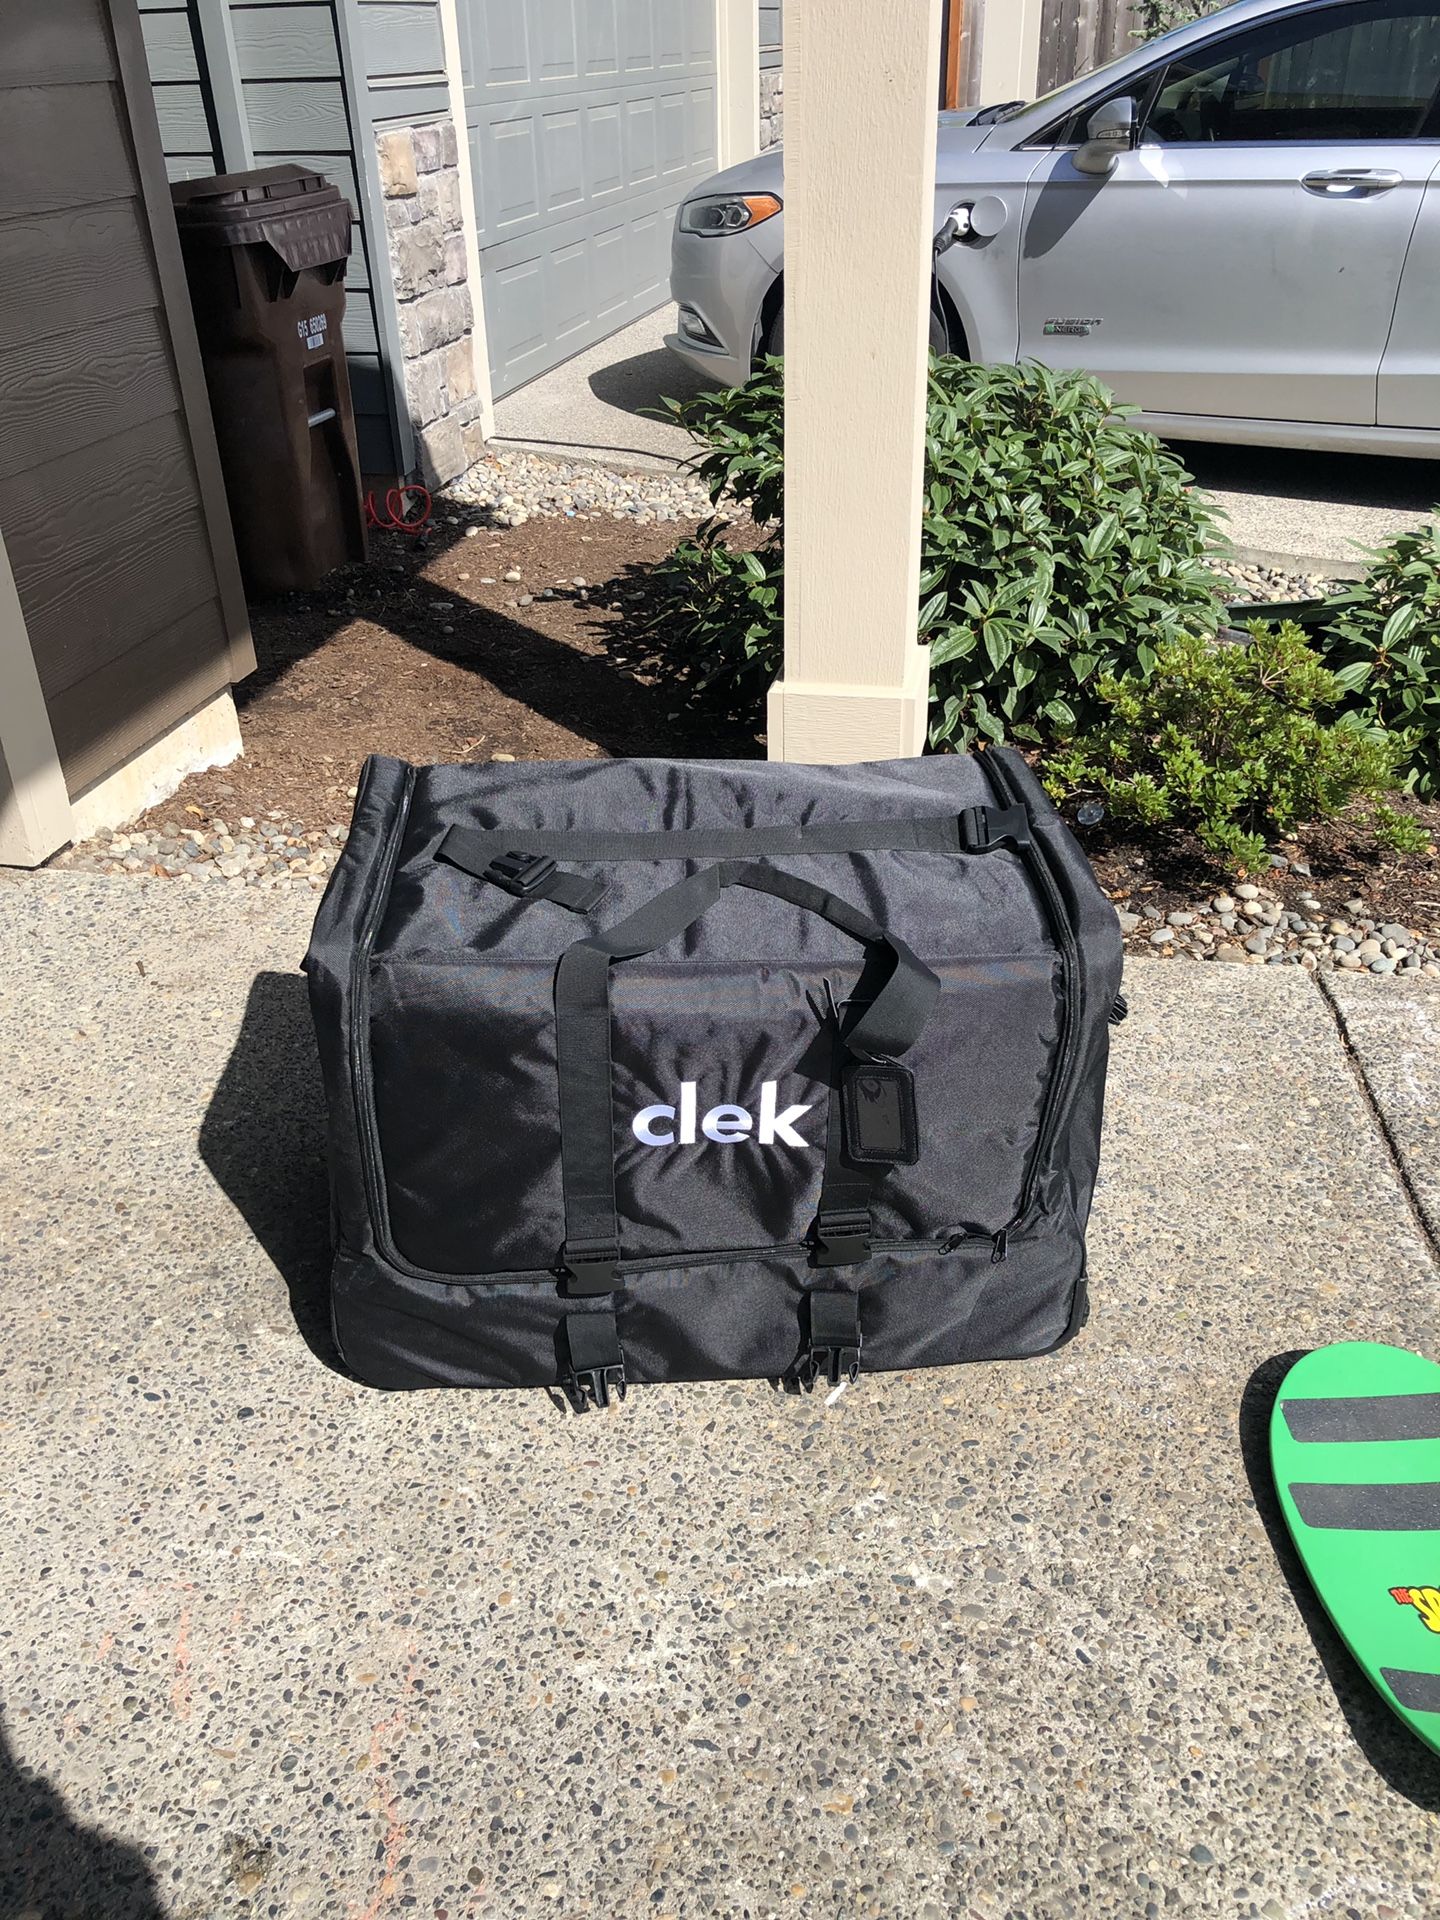 Clek Weelee car seat travel case